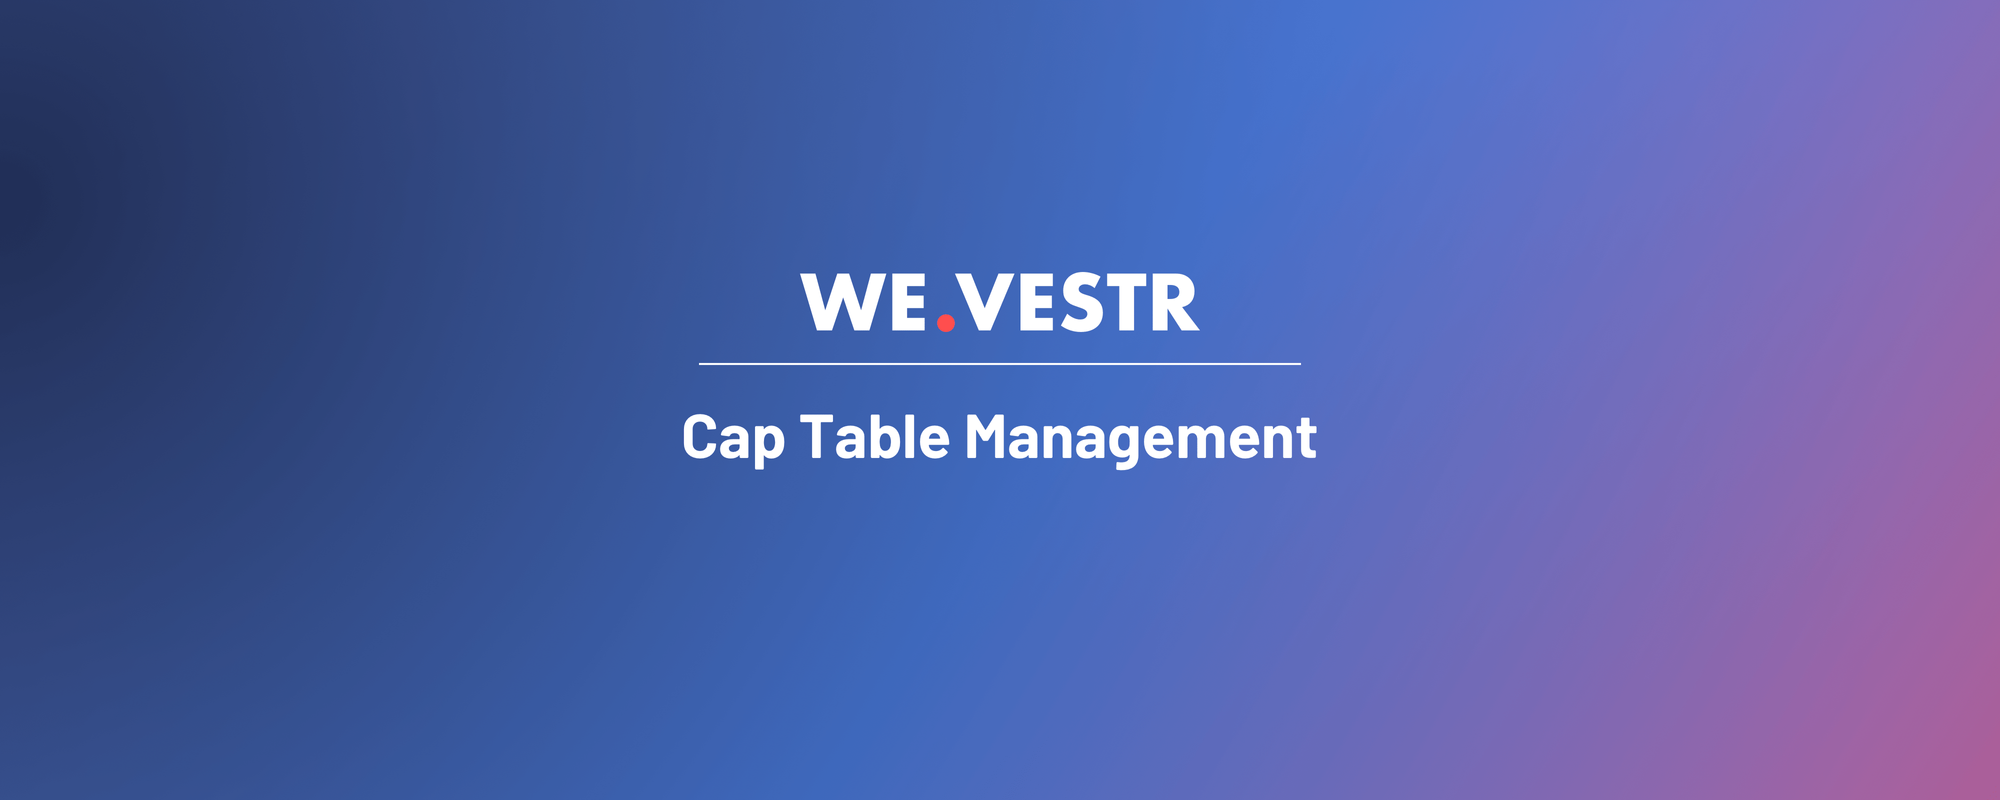 Cap Table Management